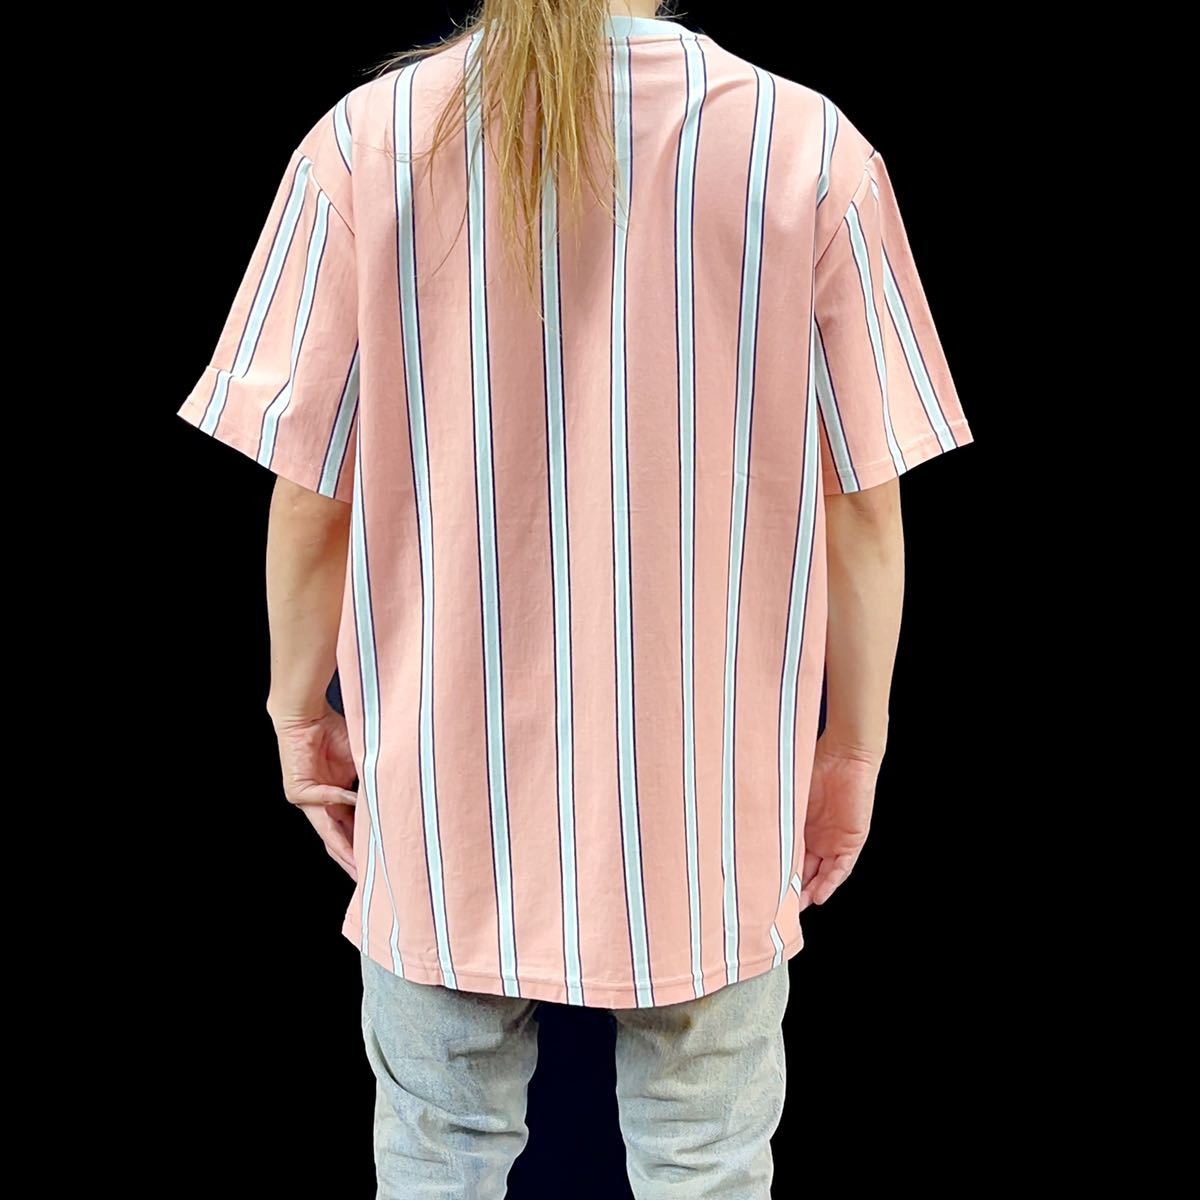 新品 HUF ハフ ストライプ ロゴ ワッペン サッカー ユニフォーム Tシャツ ライト ピンク オレンジ Mサイズ ストリート スケーター スポーツ